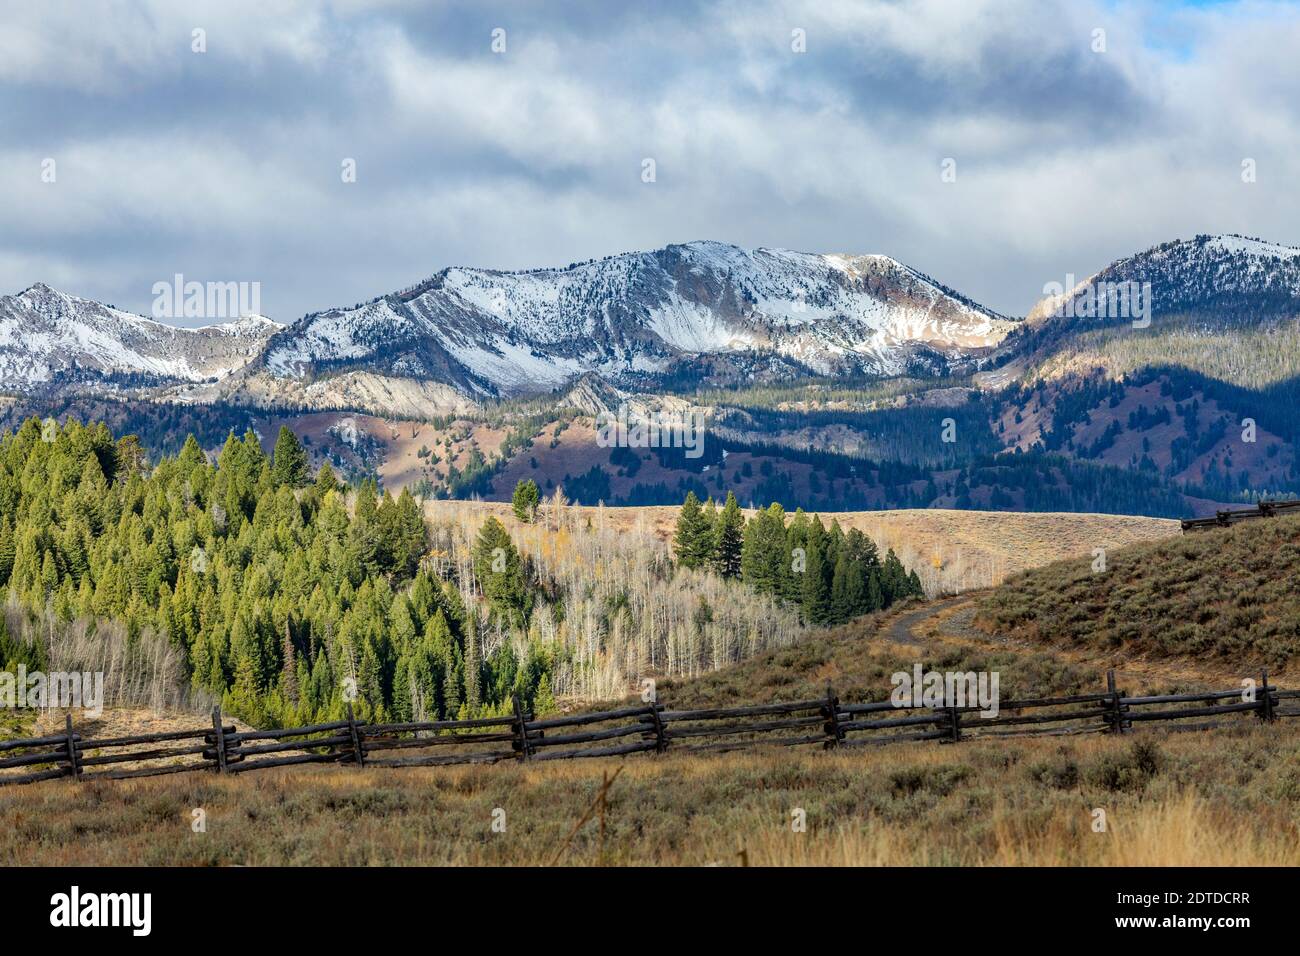 USA, Idaho, Stanley, Ranch paesaggio con montagne e foreste Foto Stock